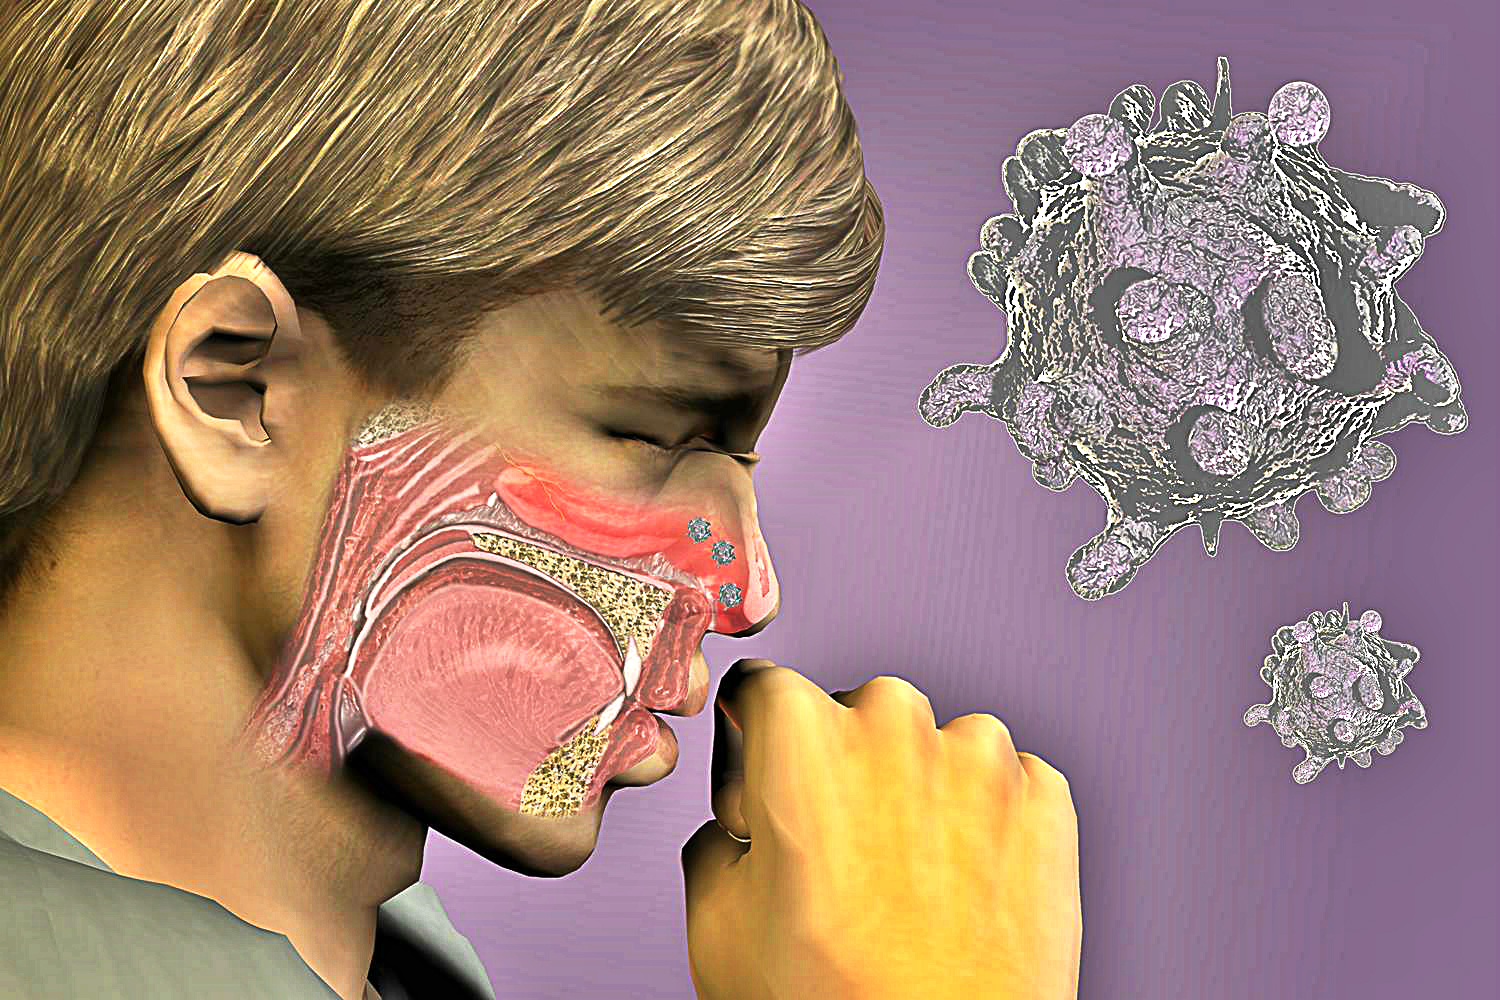 Острые инфекционные заболевания дыхательных путей